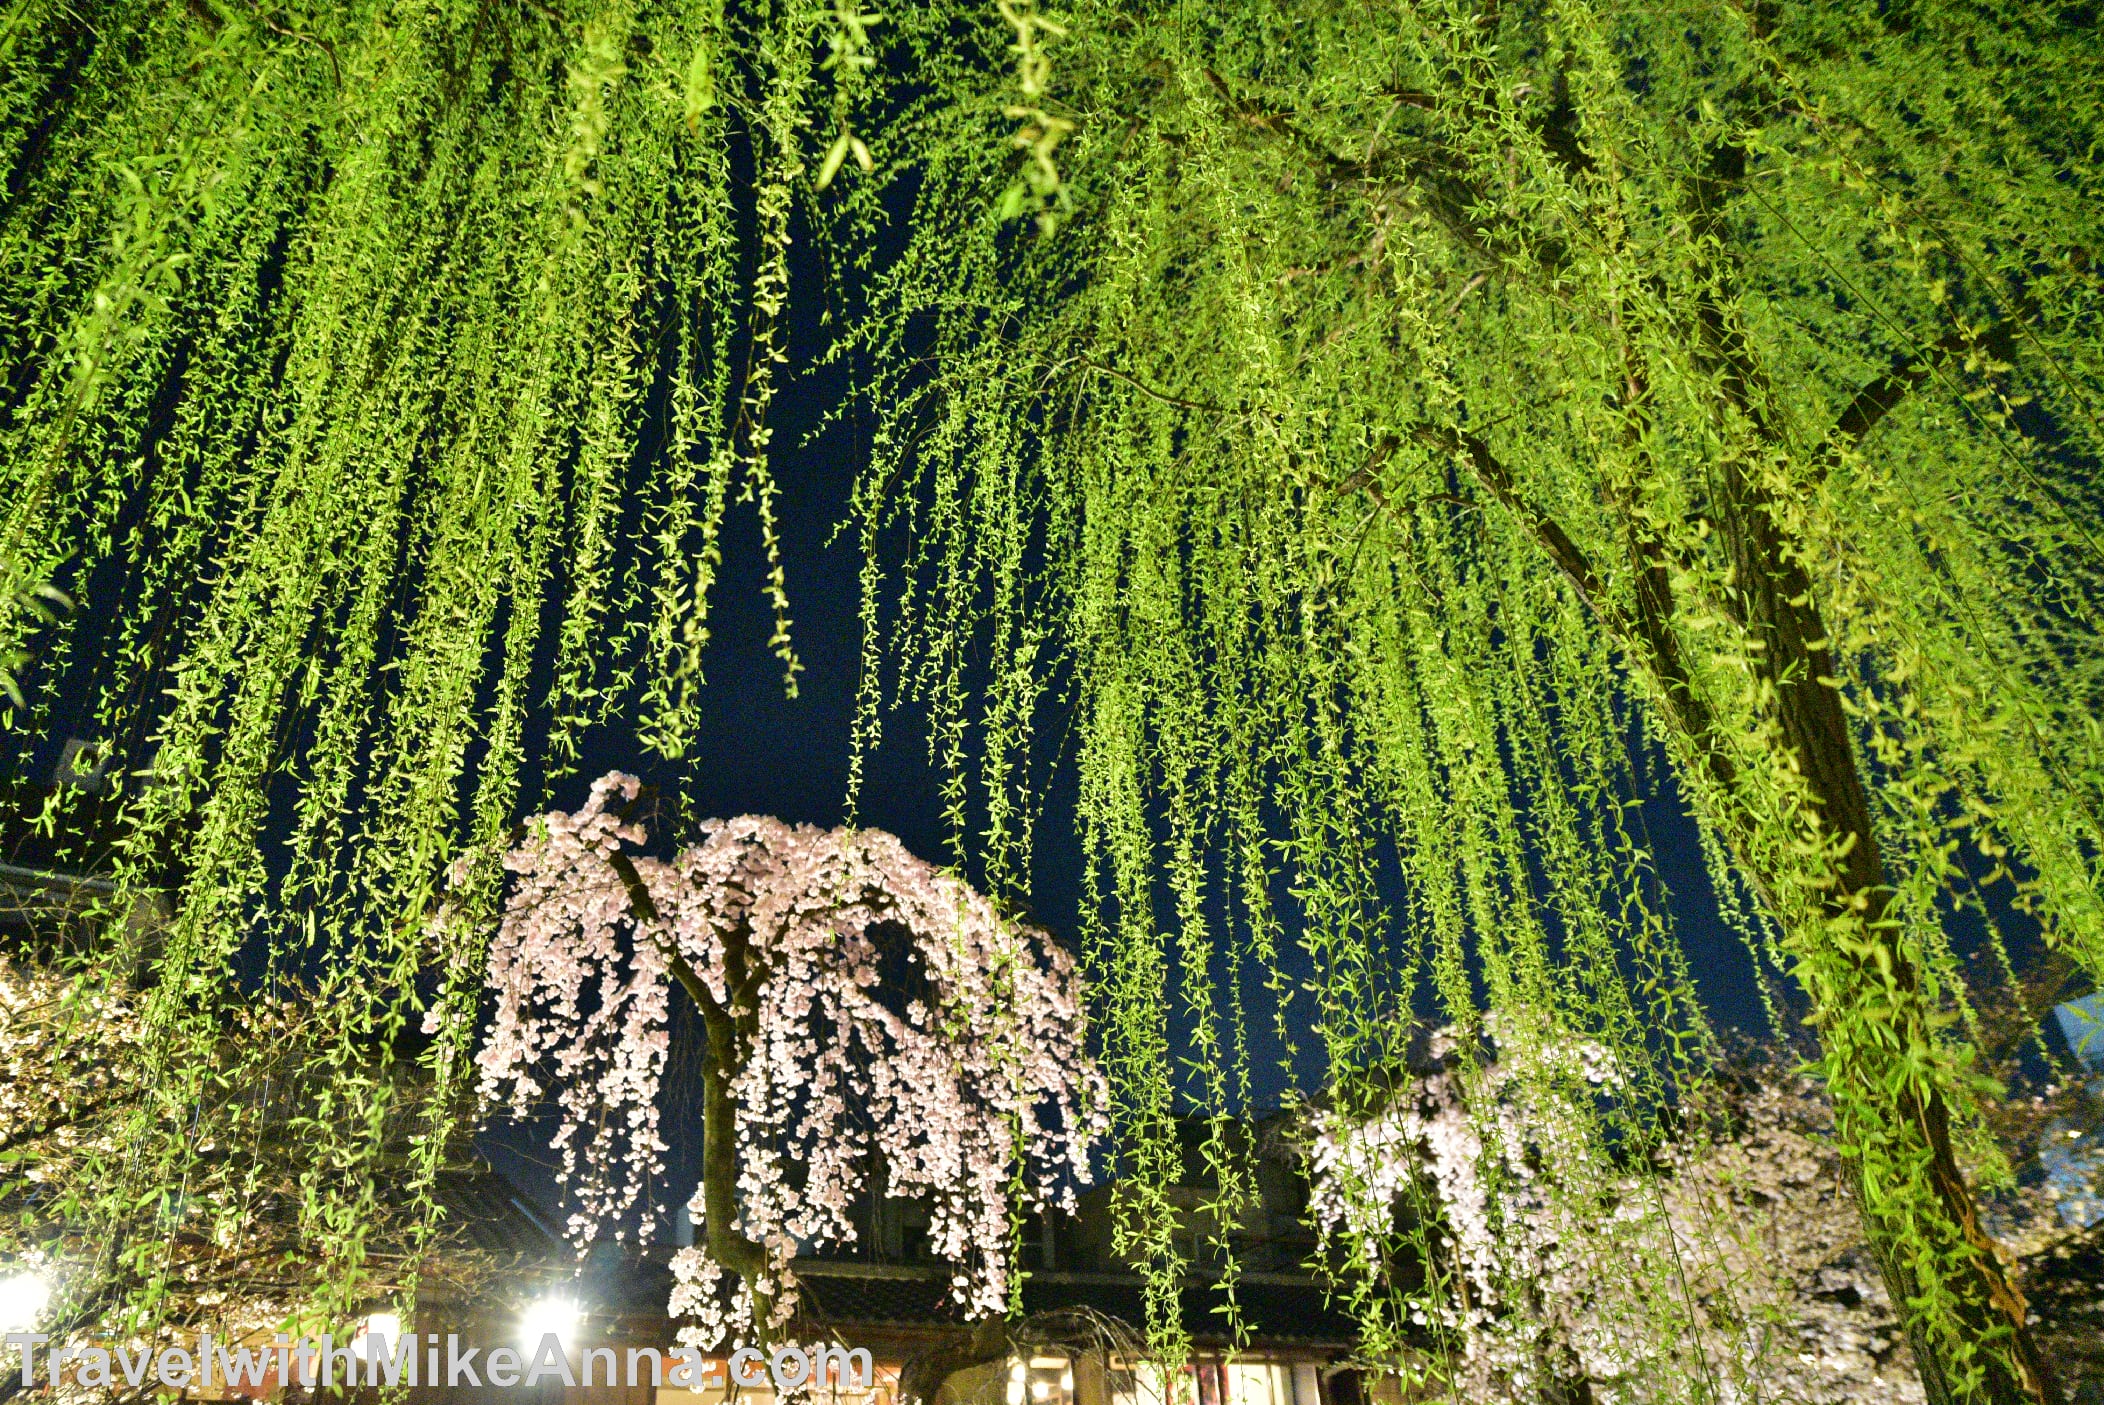  祇園白川。櫻花